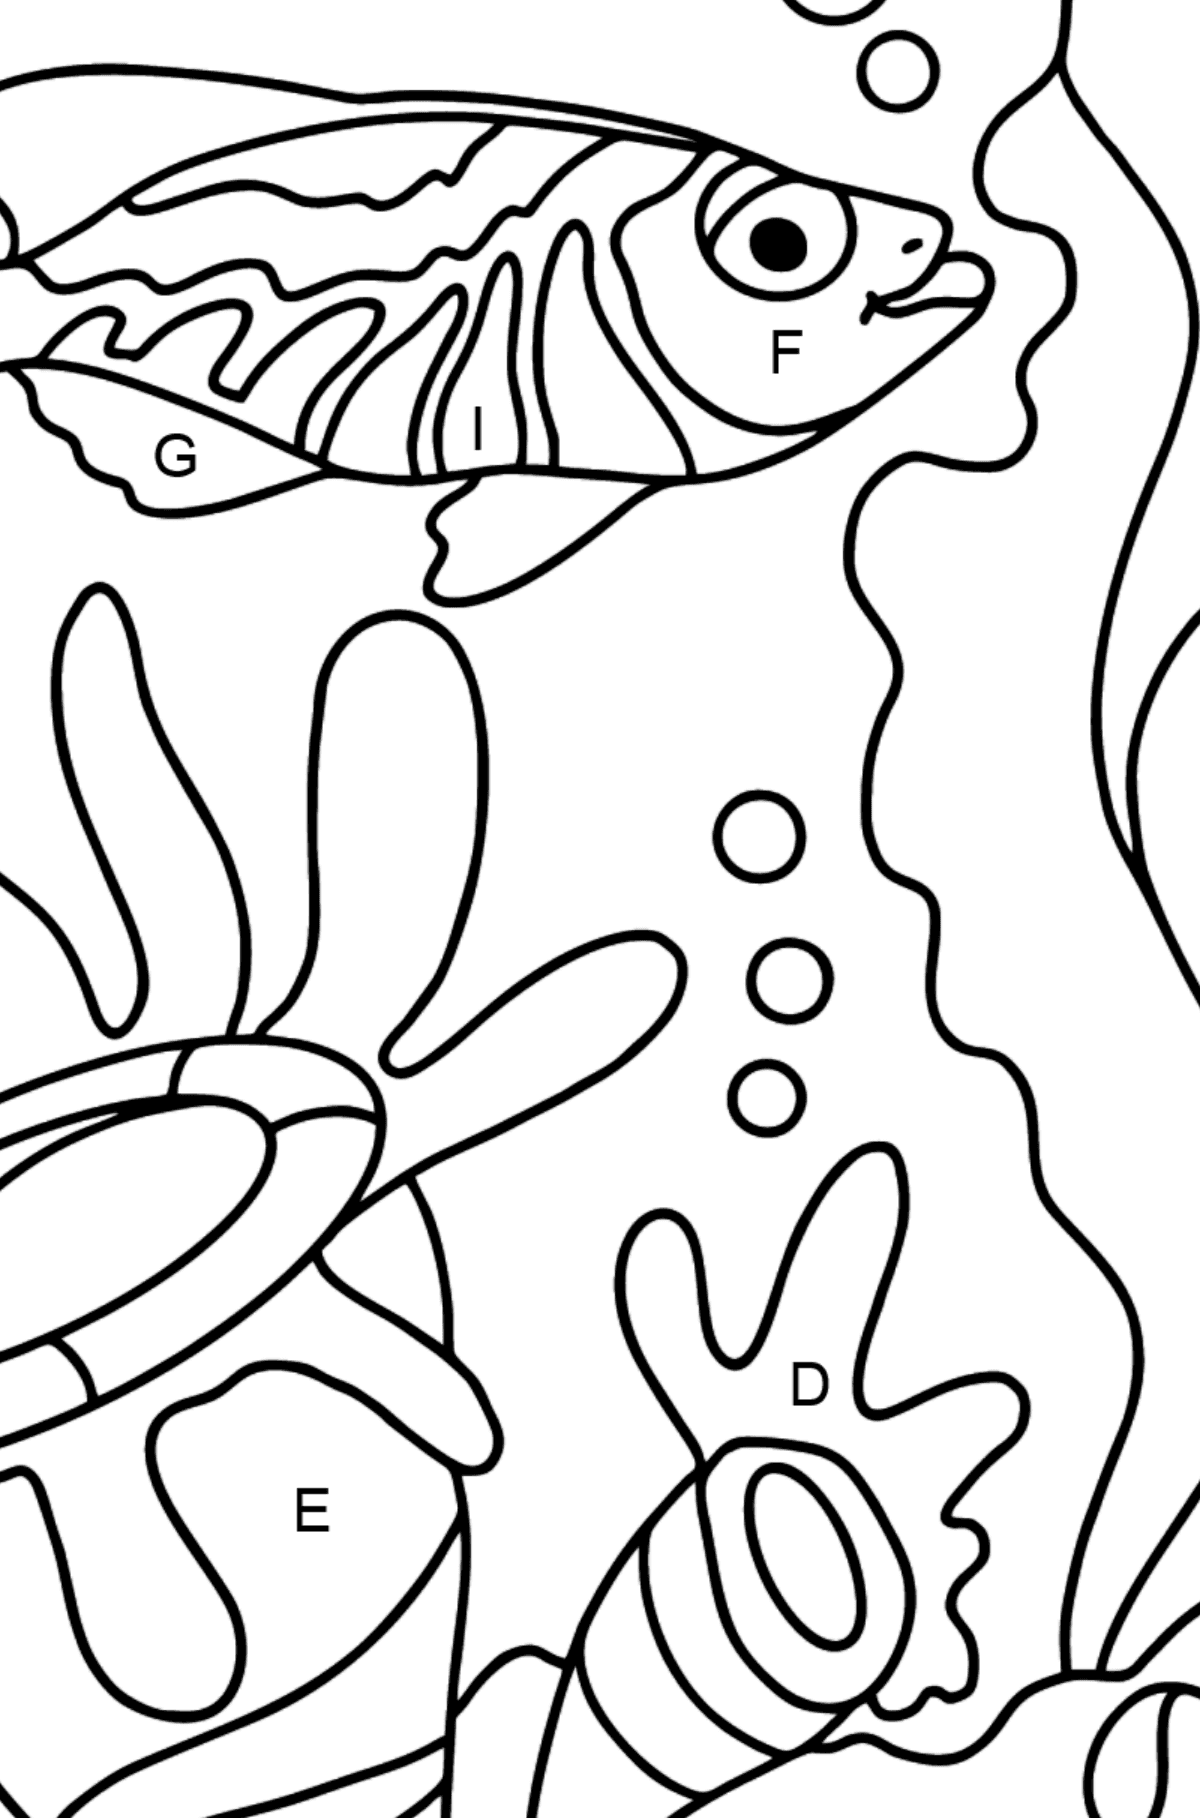 Dibujo para Colorear Fáciles - Un Pez Mira los Corales Ensoñado - Colorear por Letras para Niños